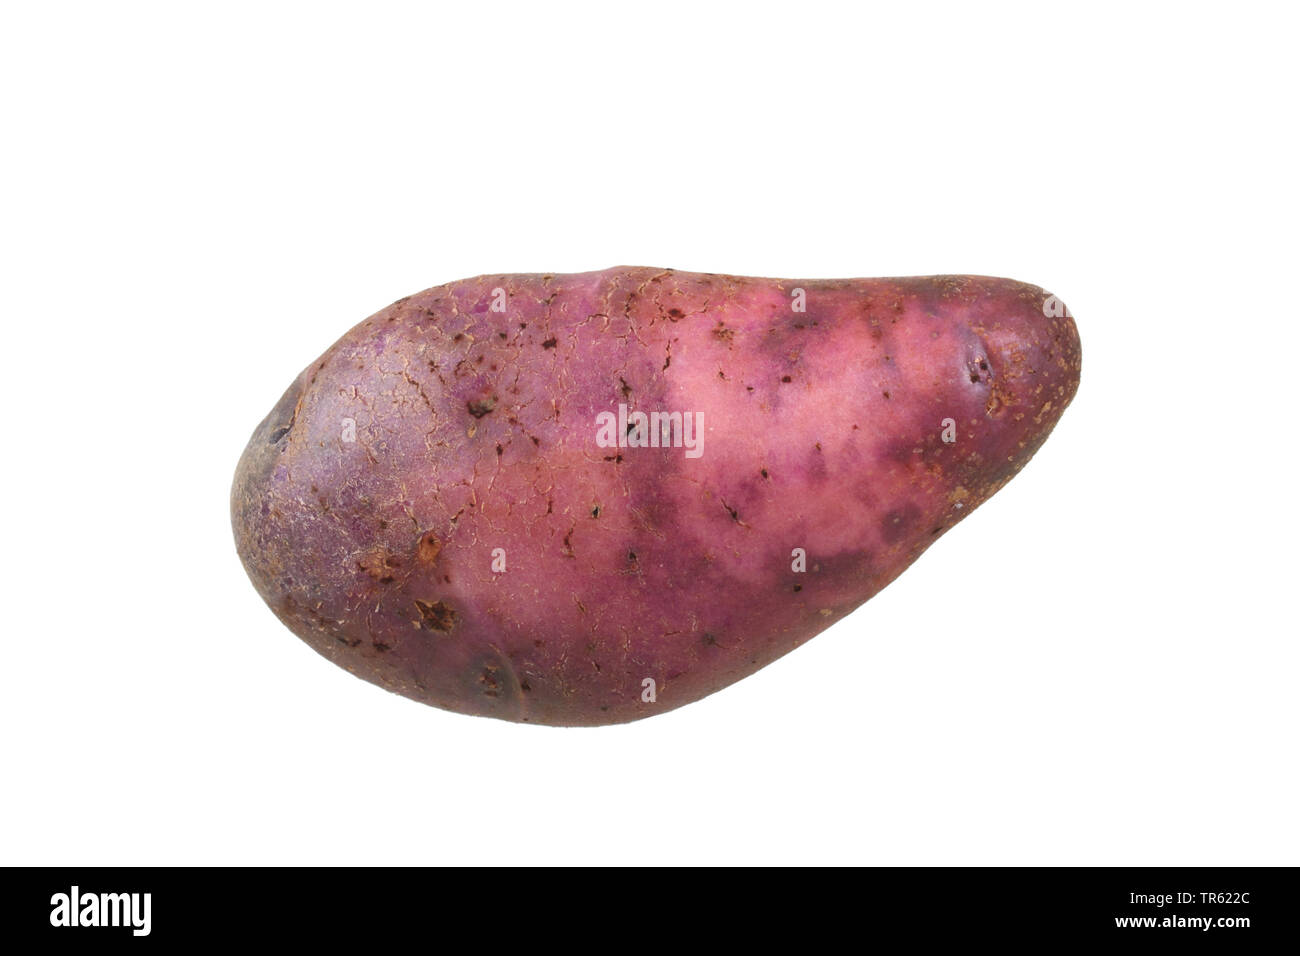 La pomme de terre (Solanum tuberosum) des semis aux yeux violets, la pomme de terre du cultivar semis aux yeux violet, dentelle Banque D'Images